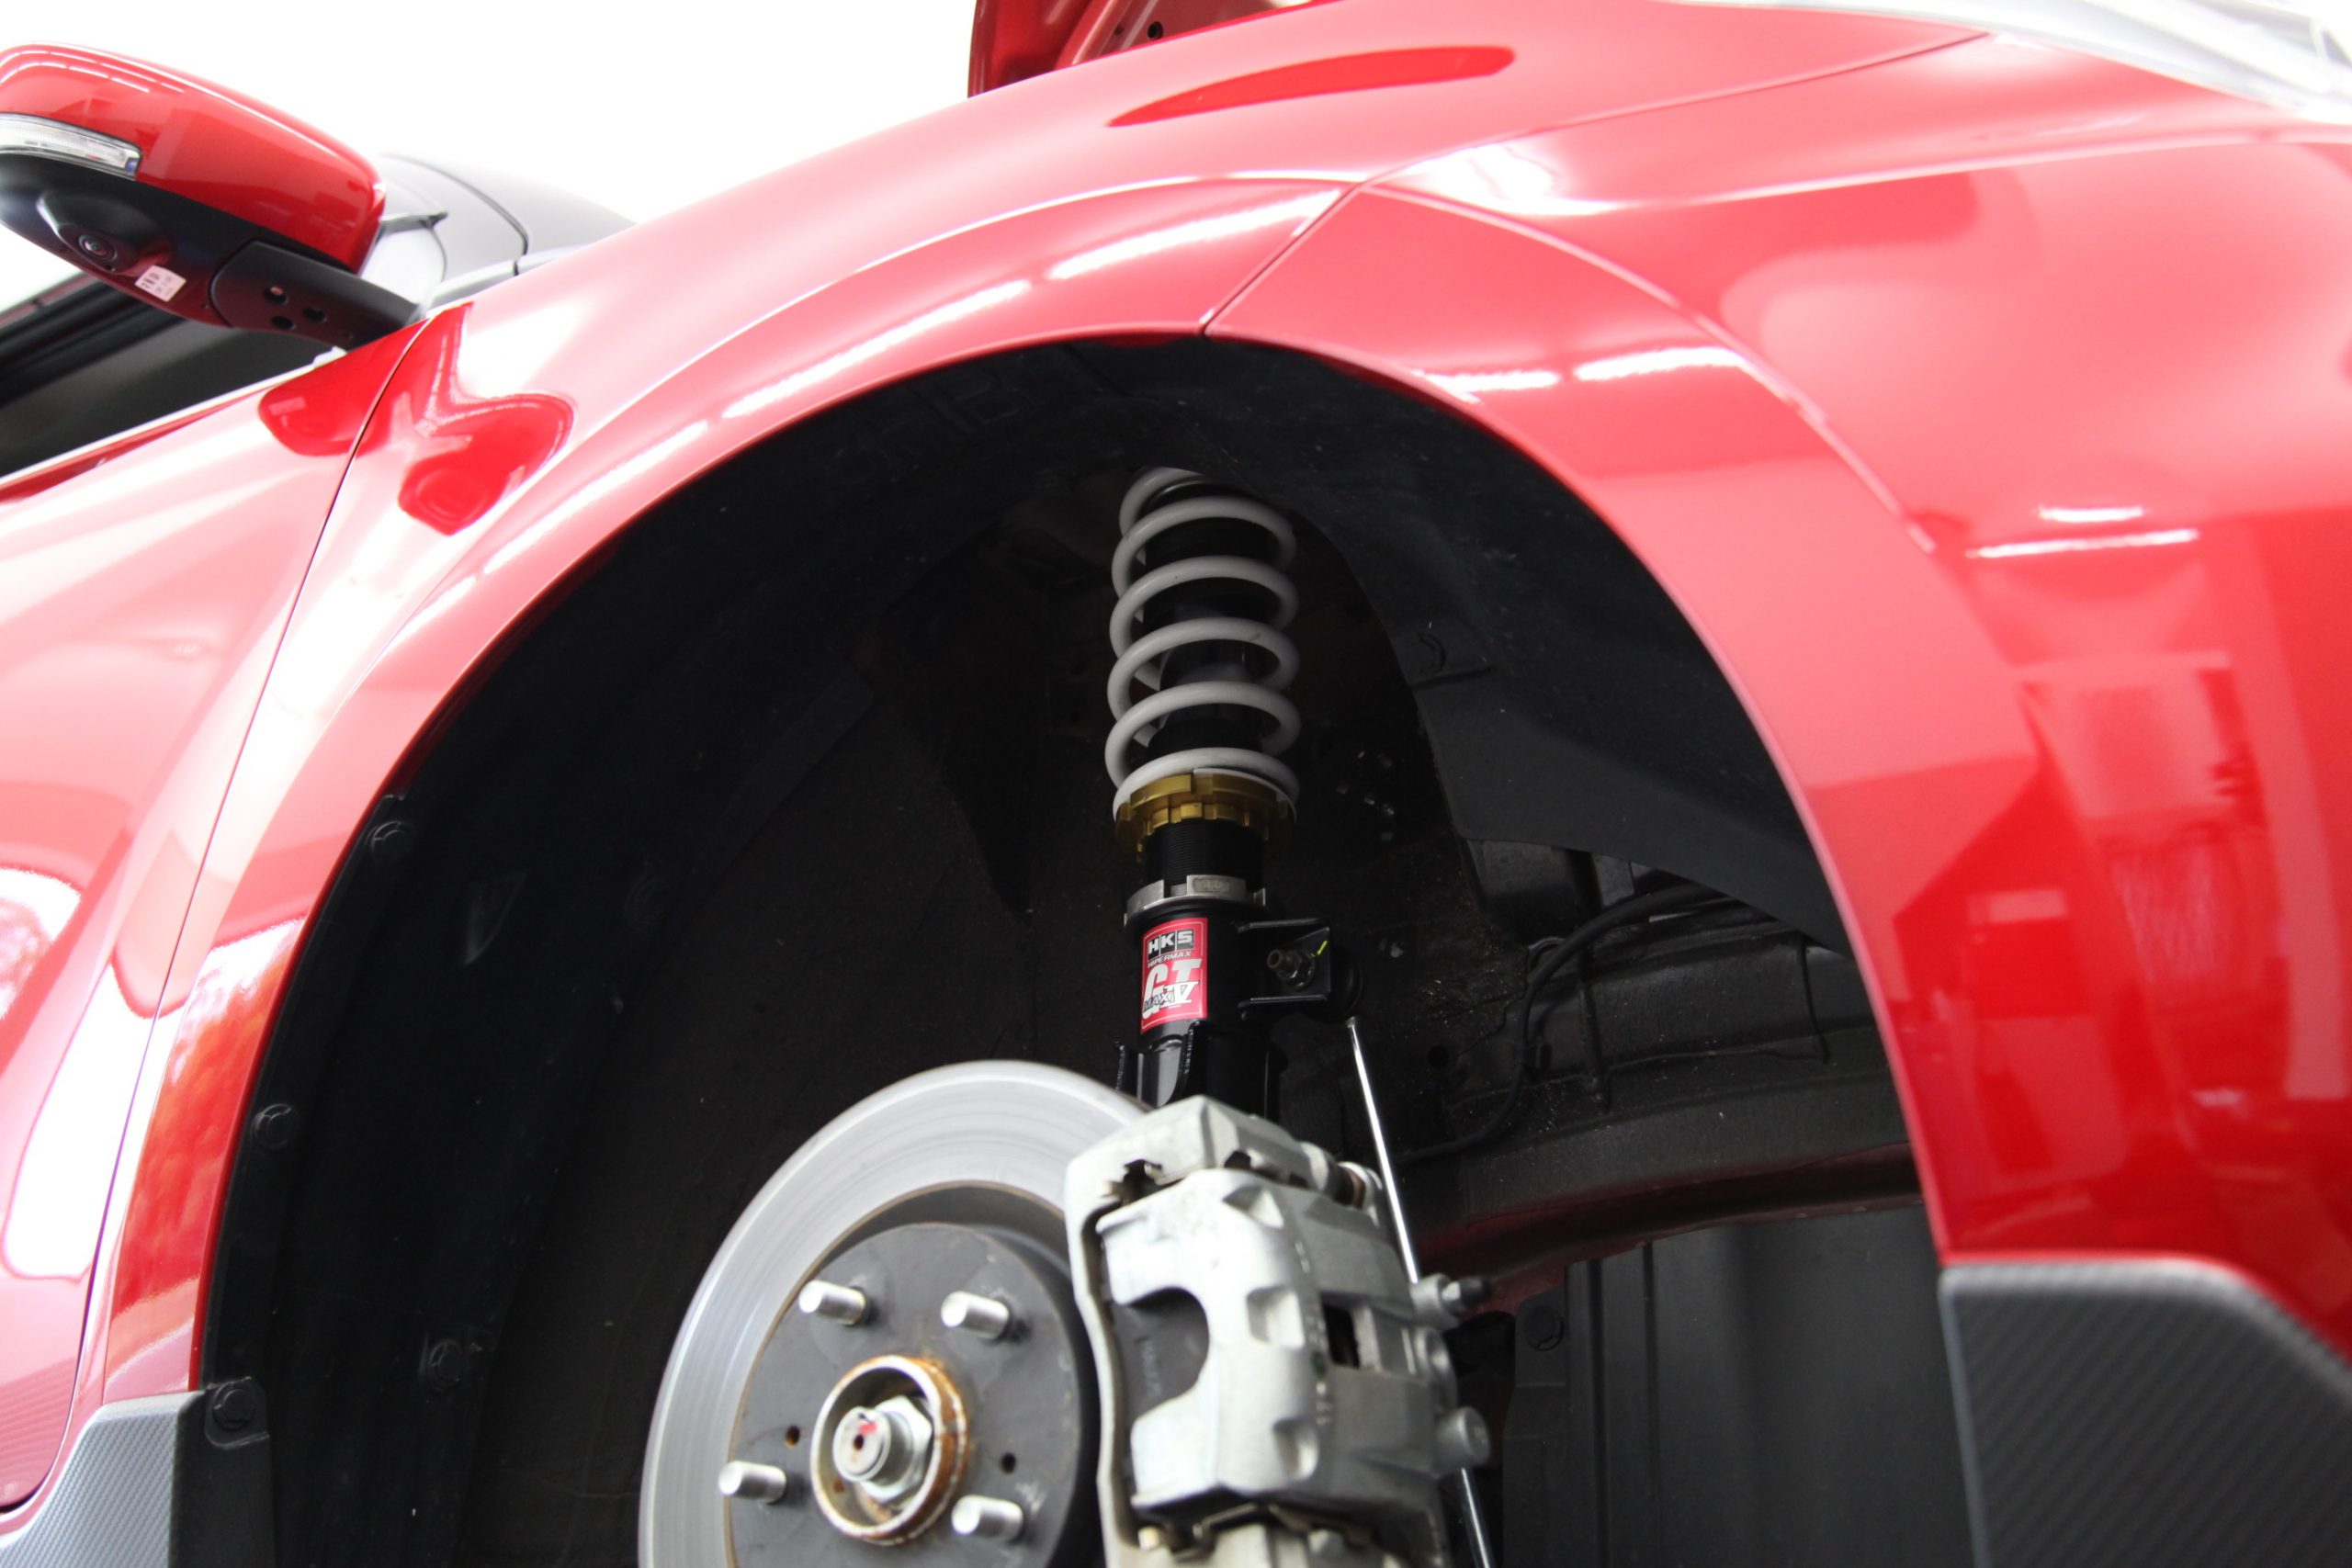 スイフト Zc33s 車高調取り付け 四輪アライメント調整 カー用品持込取り付け専門店 フラットフィールド 四輪アライメント 足回り交換